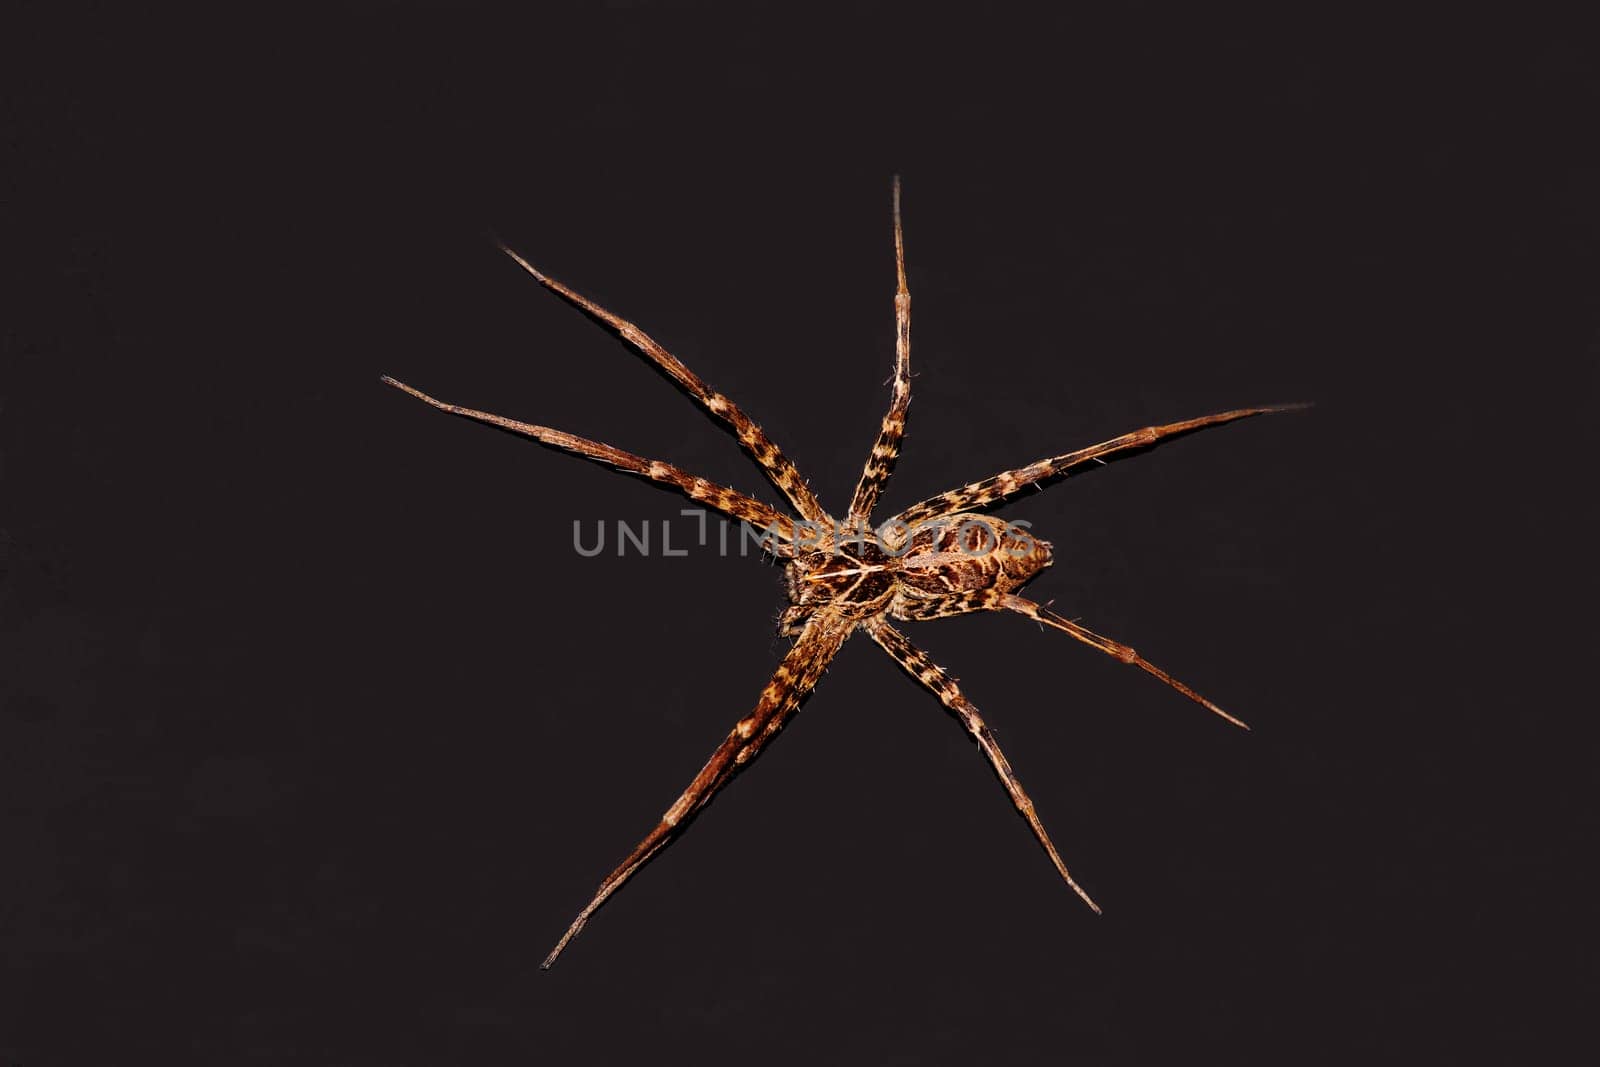 Nurseryweb Spider 10364 by kobus_peche